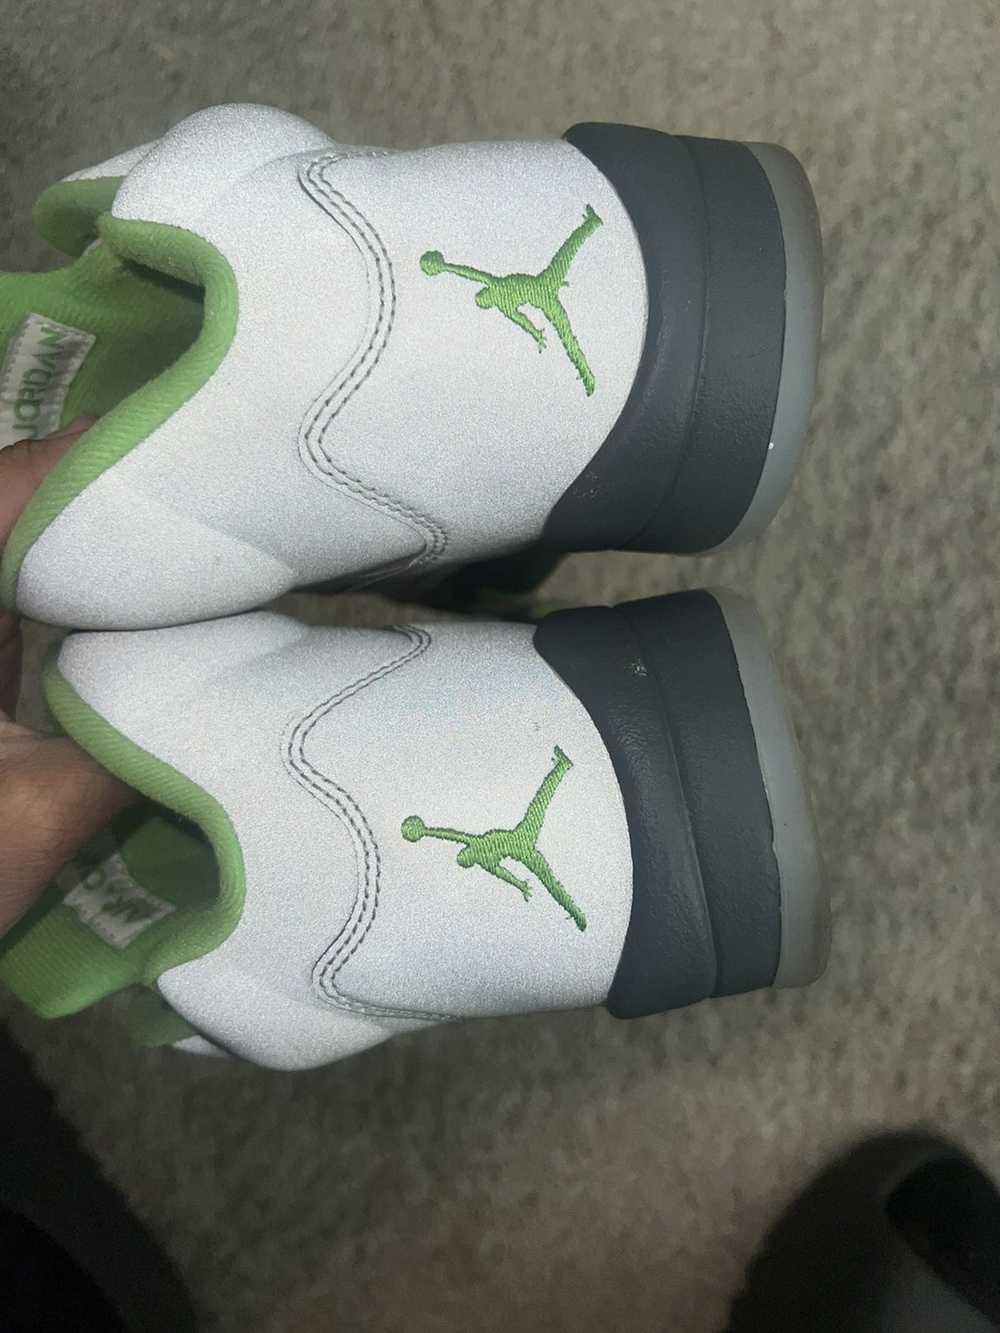 Jordan Brand × Nike Jordan 5 Retro “Green Bean” - image 10